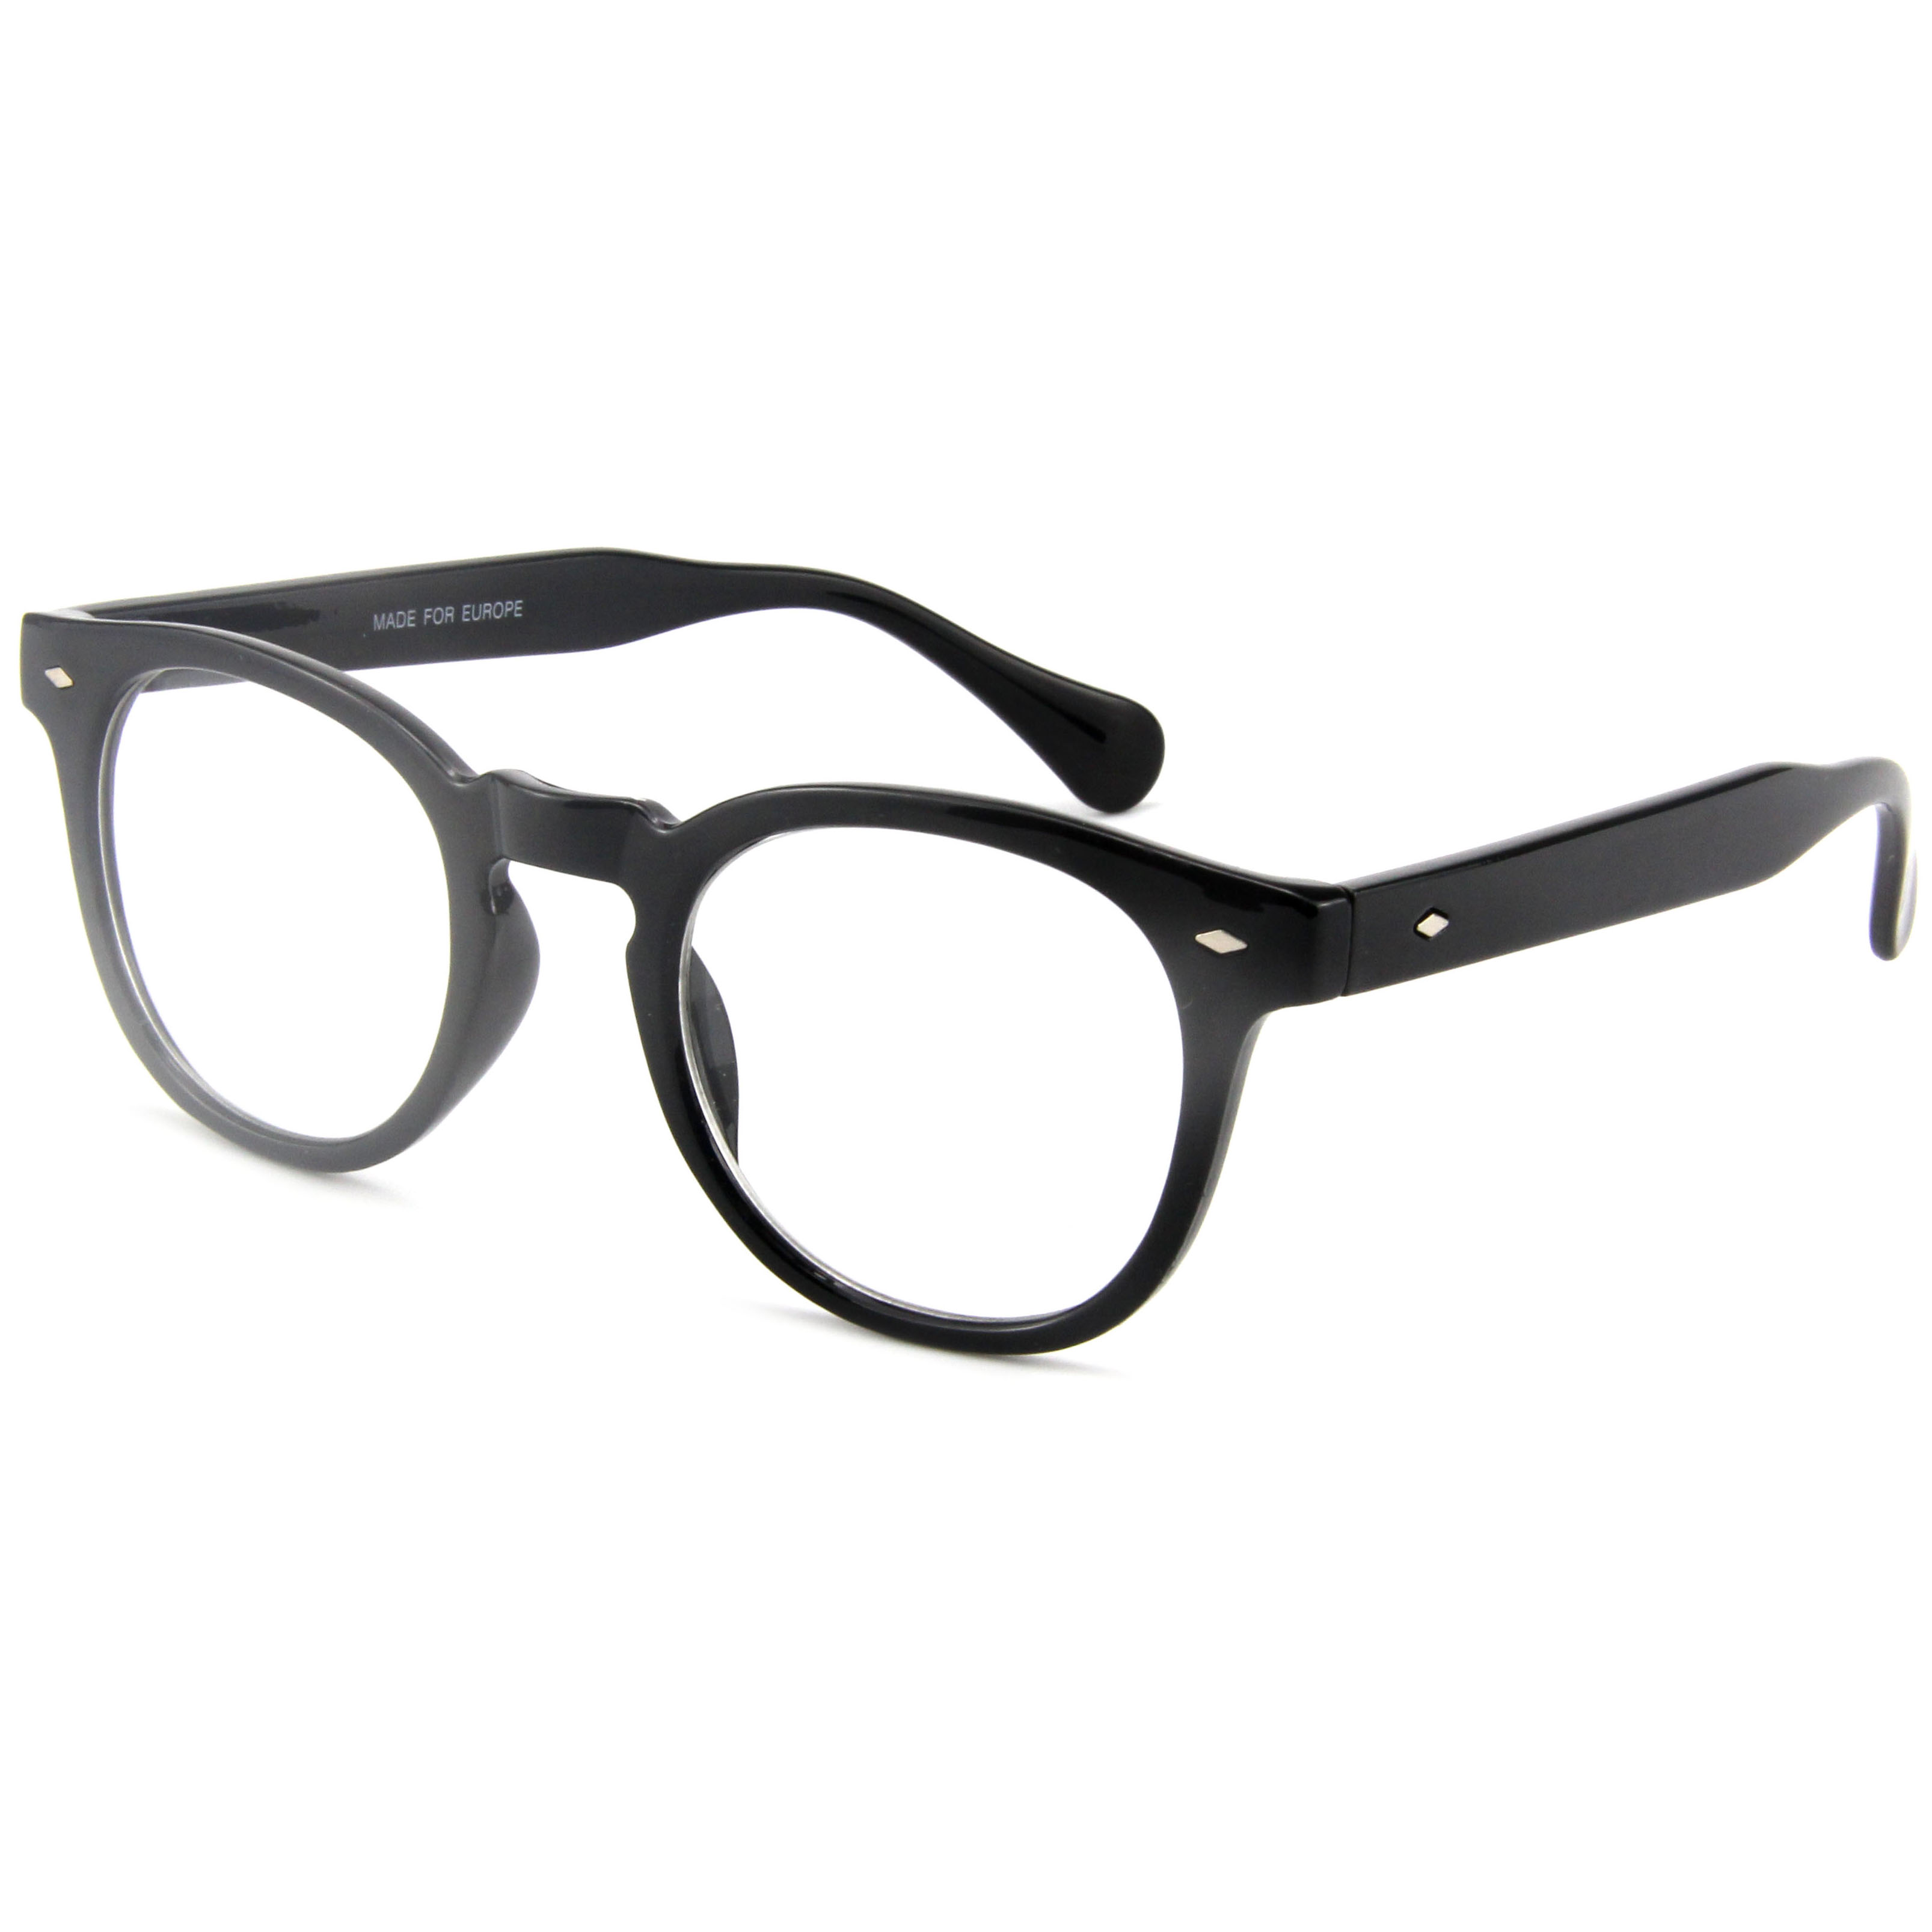 EUGENIA Frames Optical Eyeglasses Glasses Design Frames Eyeglasses For Eyeglasses